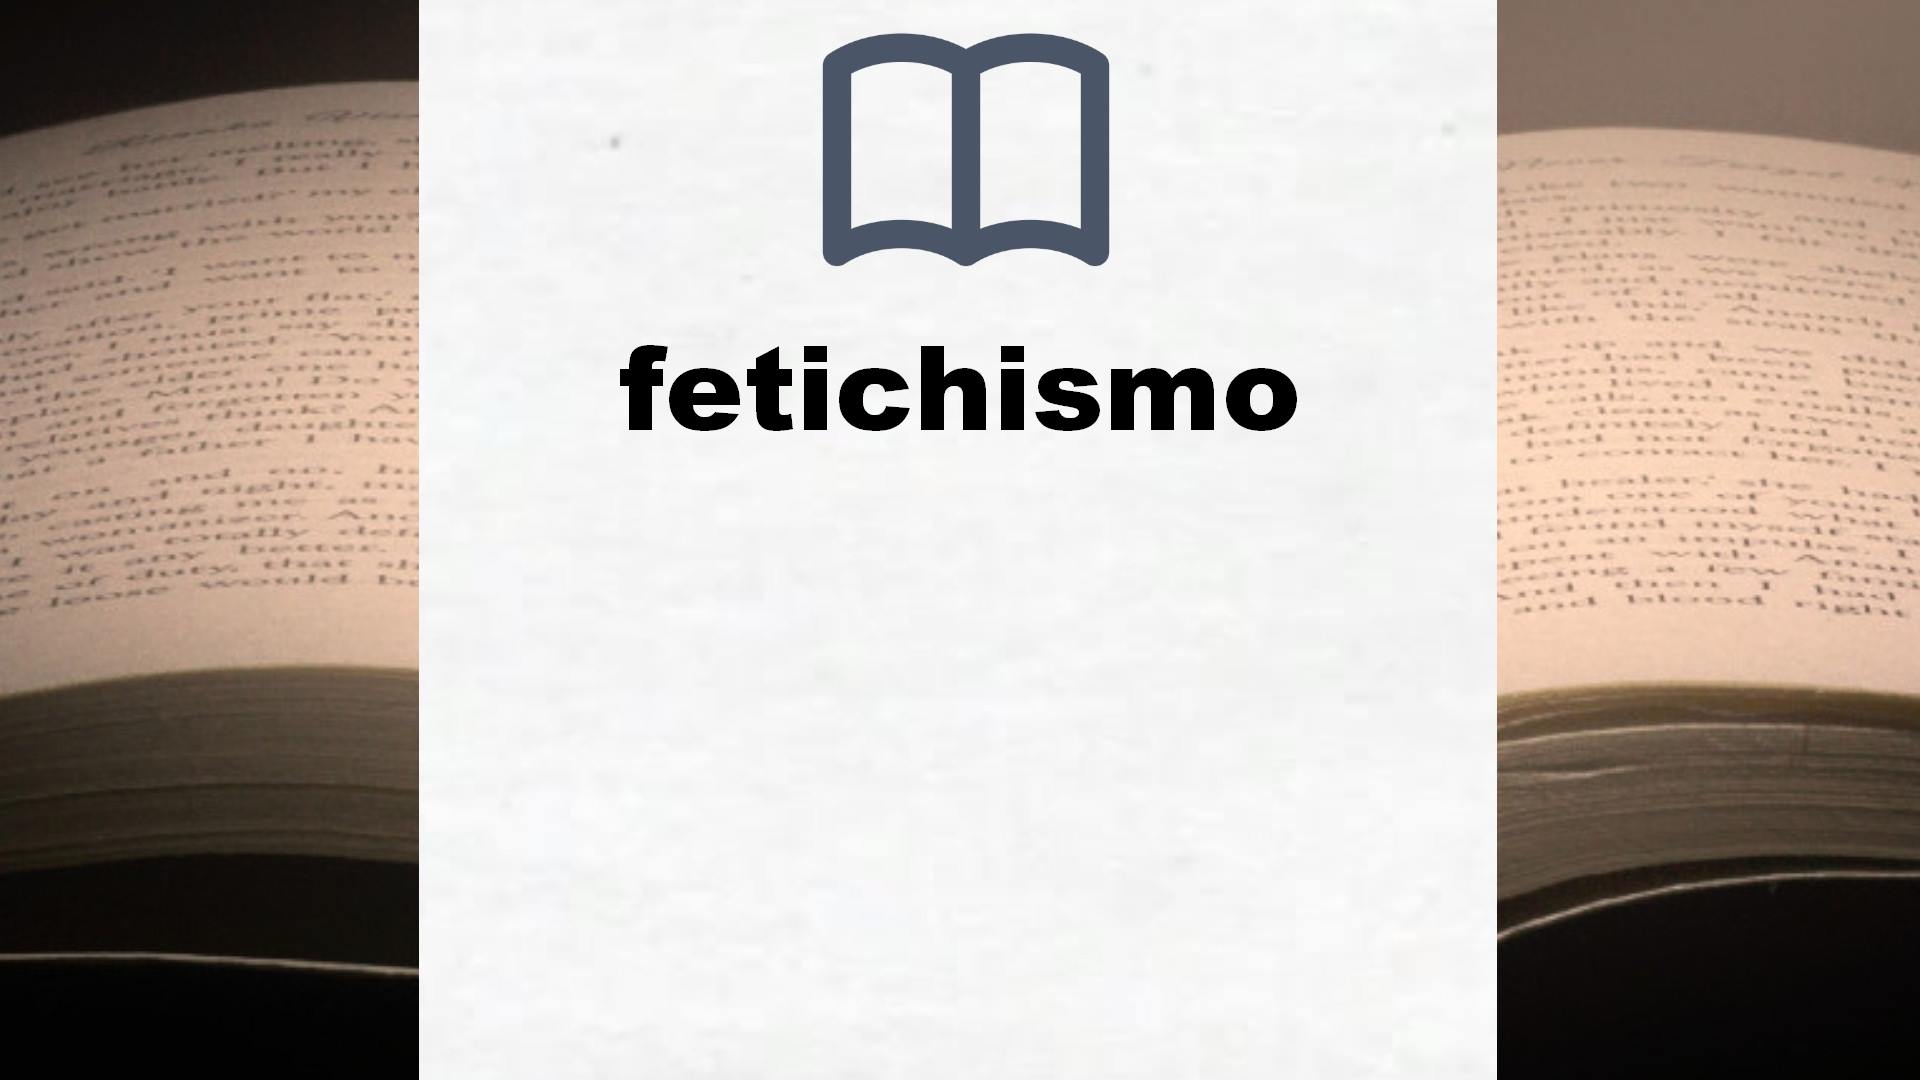 Libros sobre fetichismo